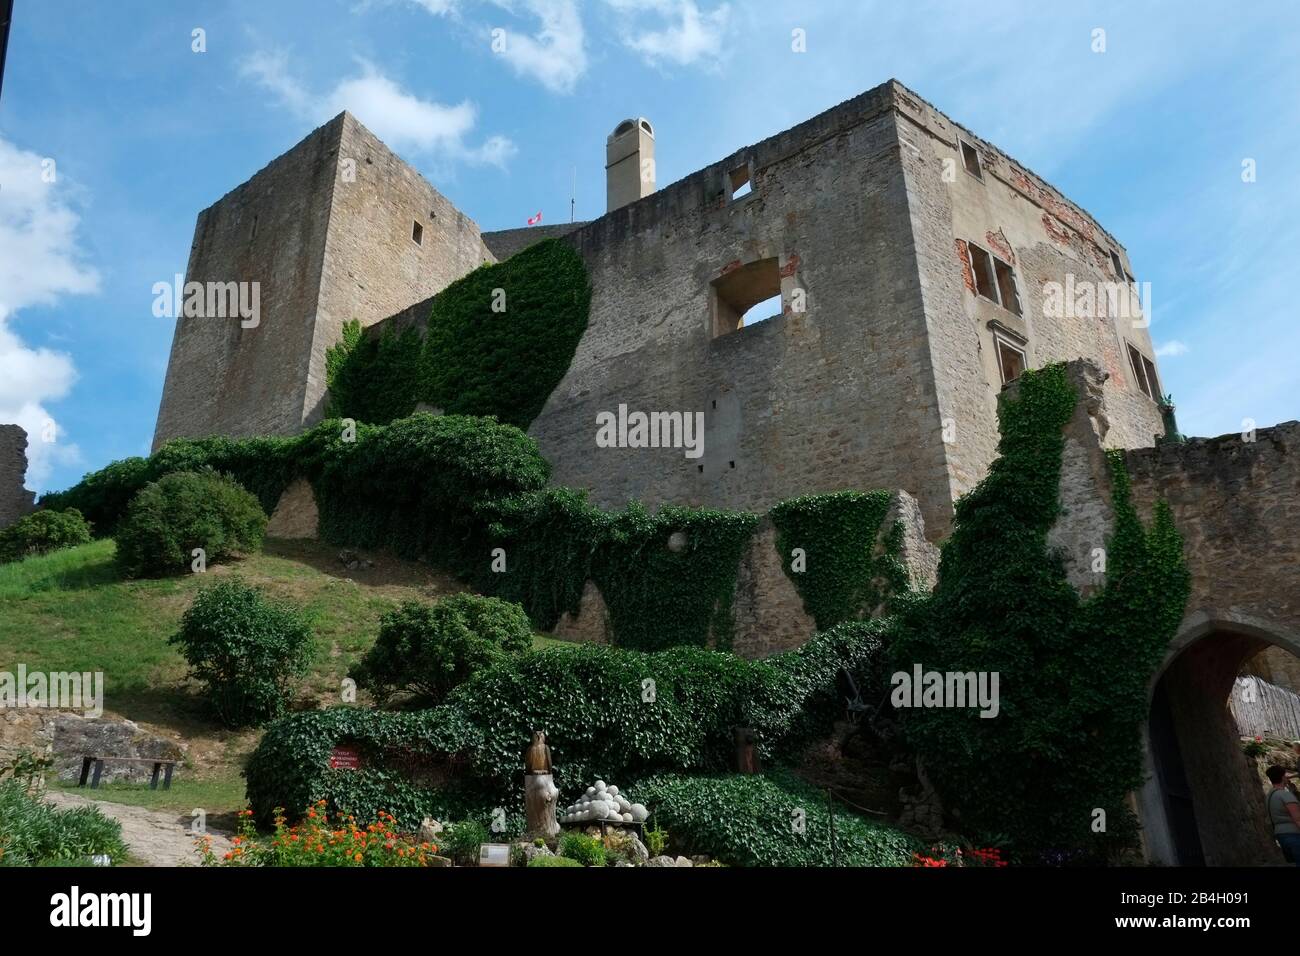 Castello di Landstejn, Repubblica Ceca, il Castello fu costruito all'inizio del 13th secolo probabilmente dal Moravo Premysiden come punto di appoggio per il territorio di Boemia, Moravia e Austria. Foto Stock